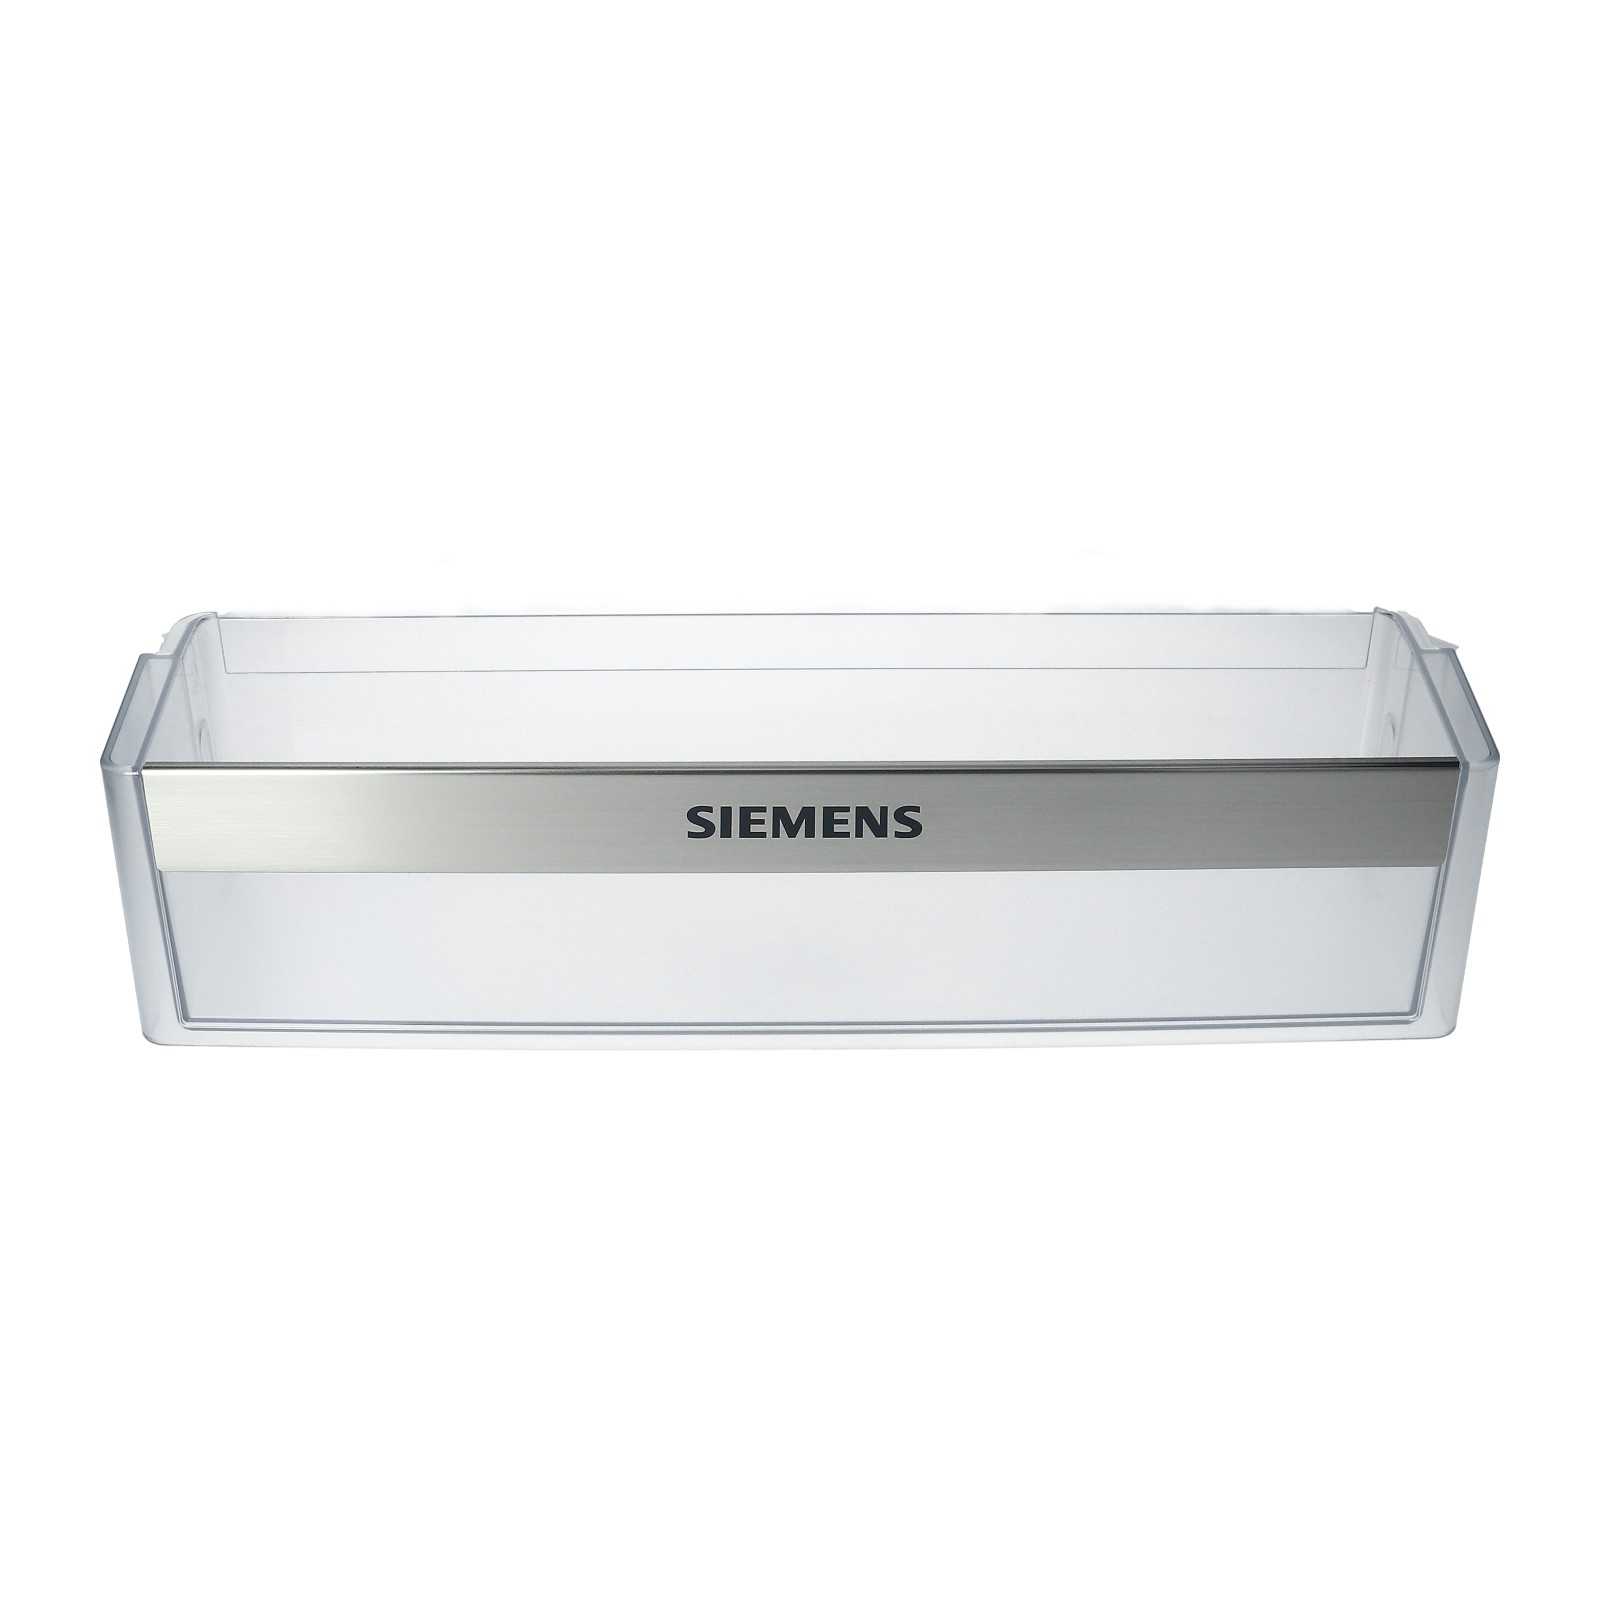 Siemens Bosch Absteller Türfach Fach niedrig 663281 für Kühlschrank 